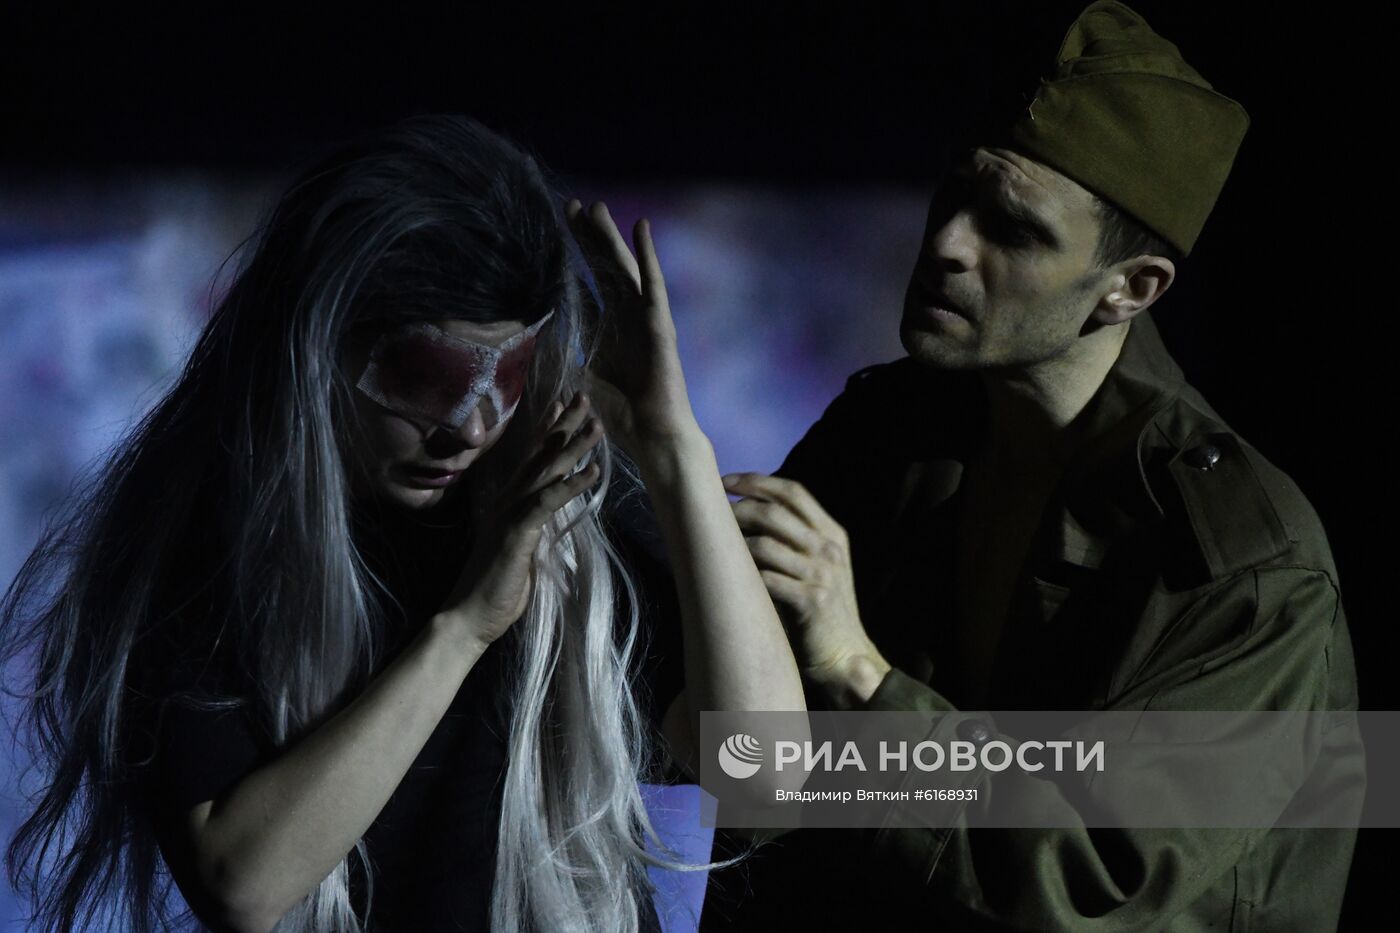 Балет "Мать" по сказке Андерсена на фестивале искусств в Сочи